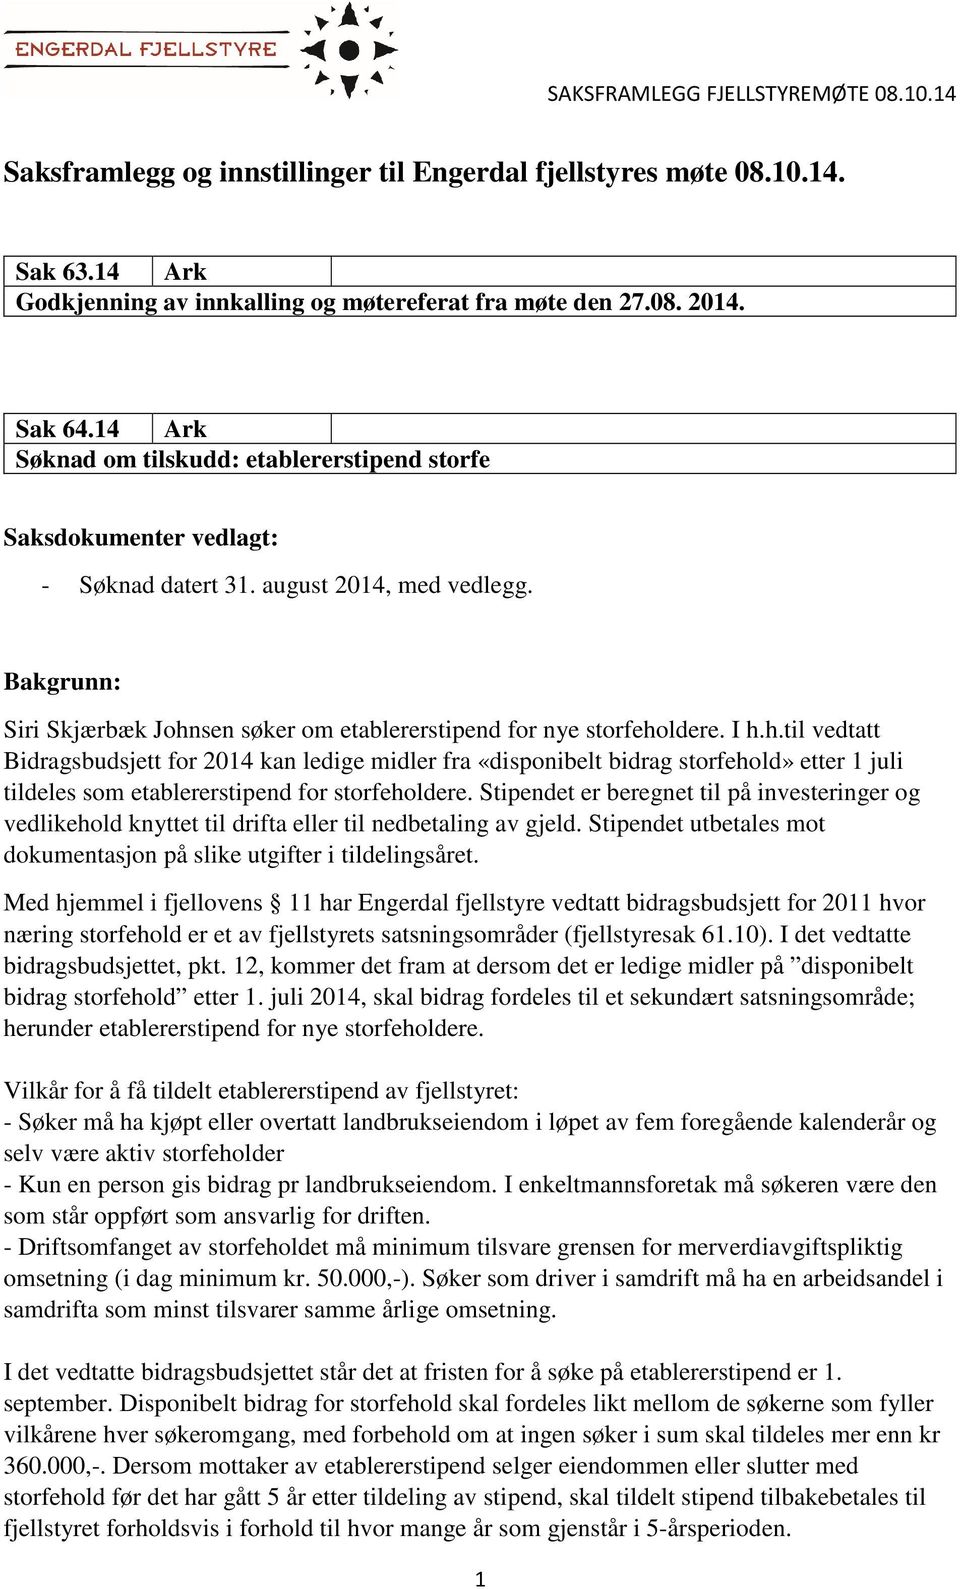 Bakgrunn: Siri Skjærbæk Johnsen søker om etablererstipend for nye storfeholdere. I h.h.til vedtatt Bidragsbudsjett for 2014 kan ledige midler fra «disponibelt bidrag storfehold» etter 1 juli tildeles som etablererstipend for storfeholdere.